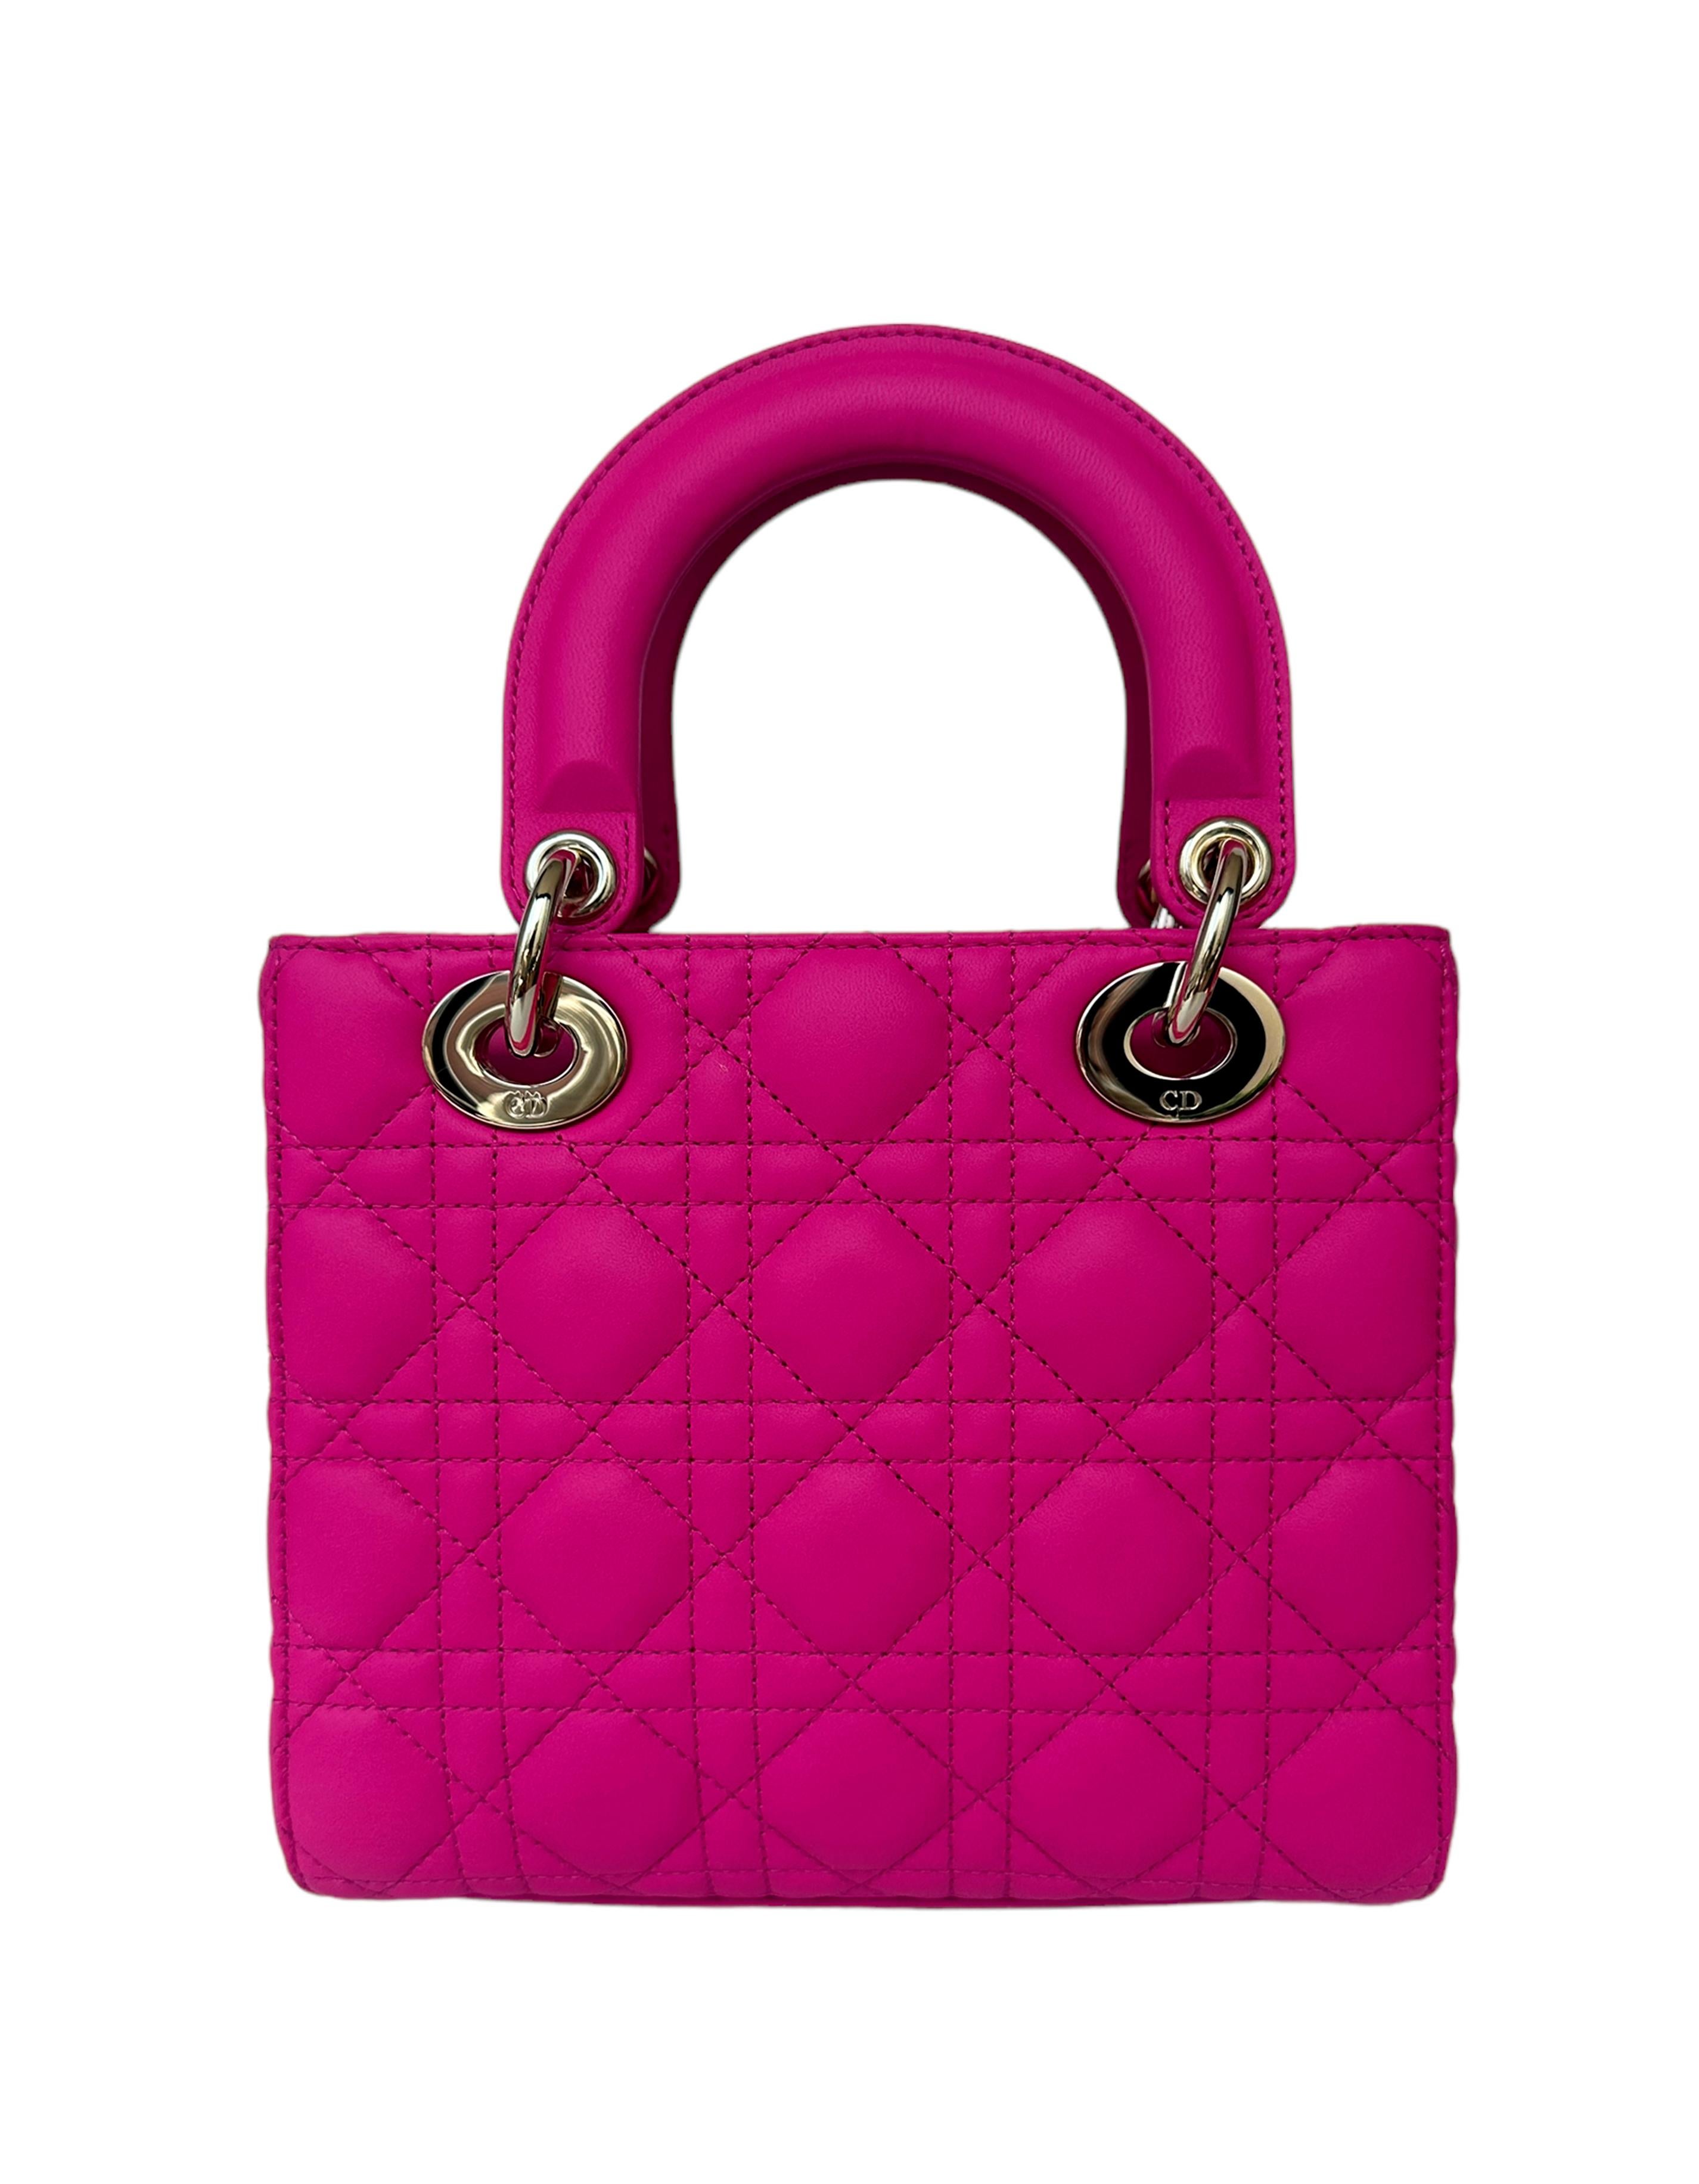 Christian Dior 2023 Rani Pink Cannage Leather Quilted My ABCDior Small Lady Dior Bag.  **Ne comprend pas les breloques de badge**

Fabriqué en : Italie
Année de production : 2023
Couleur : Rani Pink
Quincaillerie : Or pâle
Matériaux : Cuir